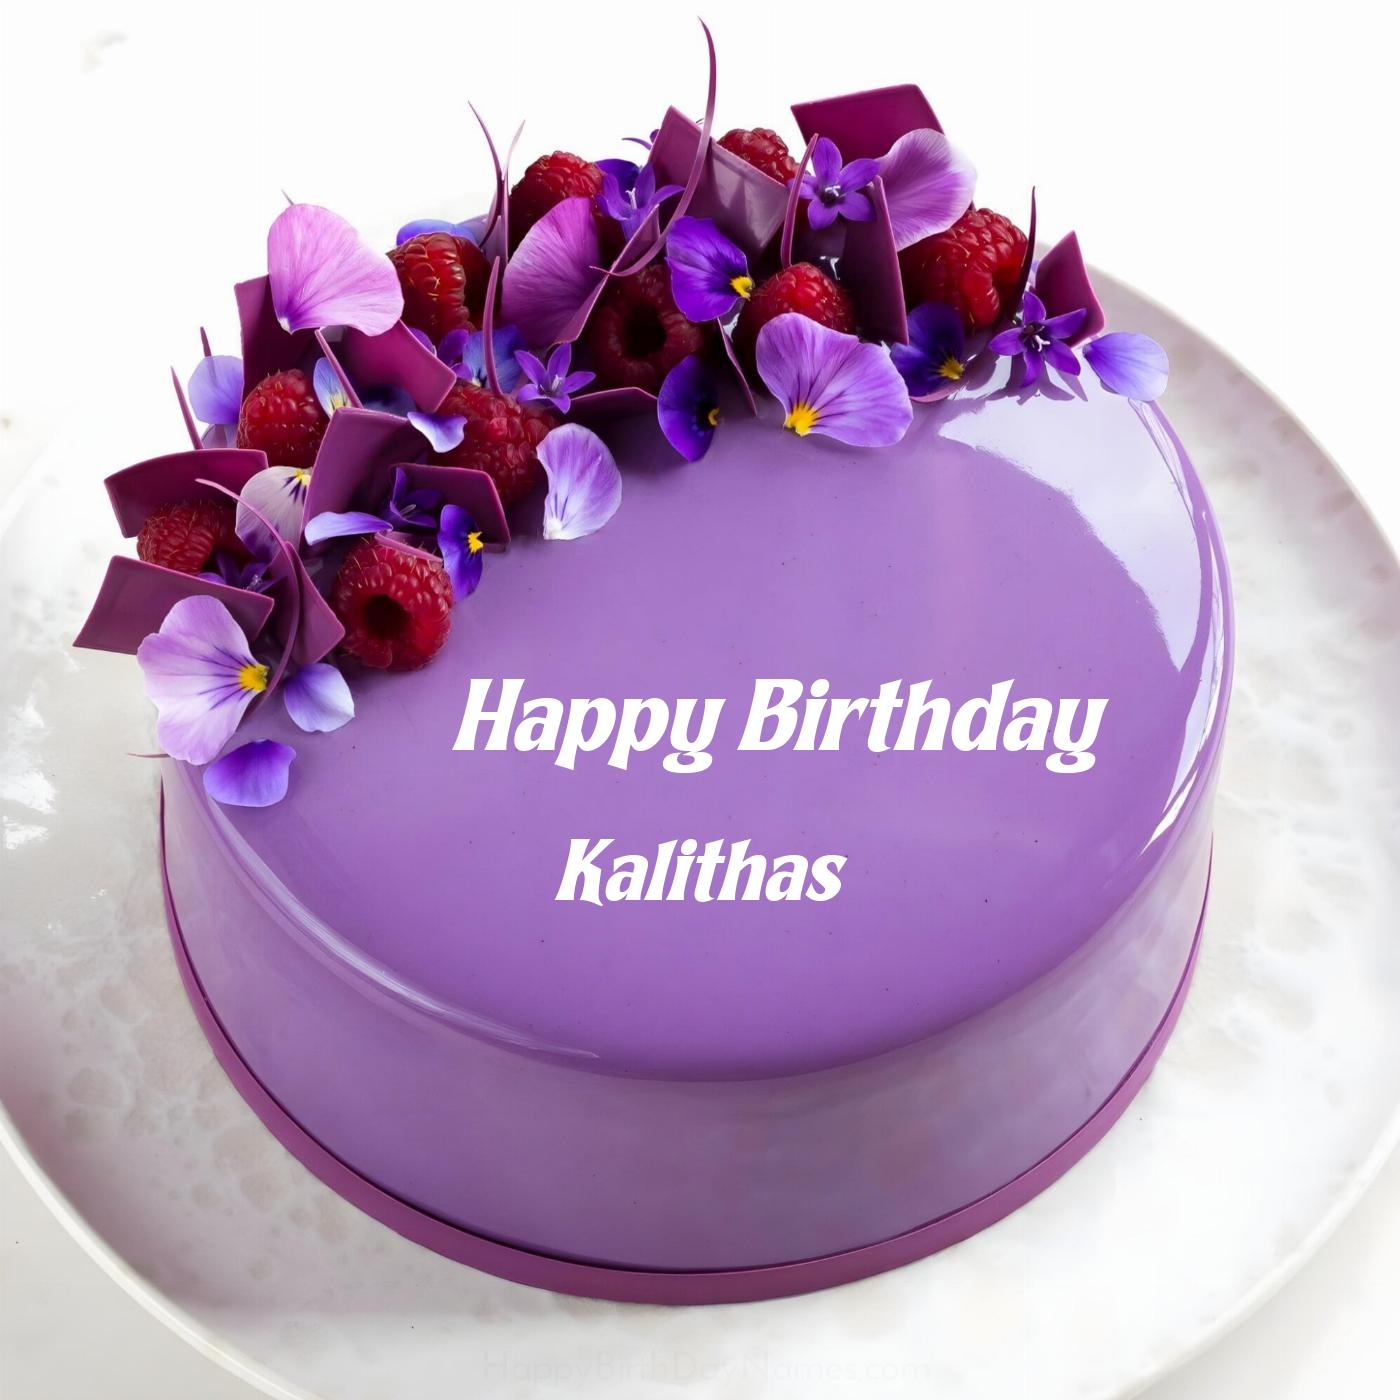 Happy Birthday Kalithas Violet Raspberry Cake